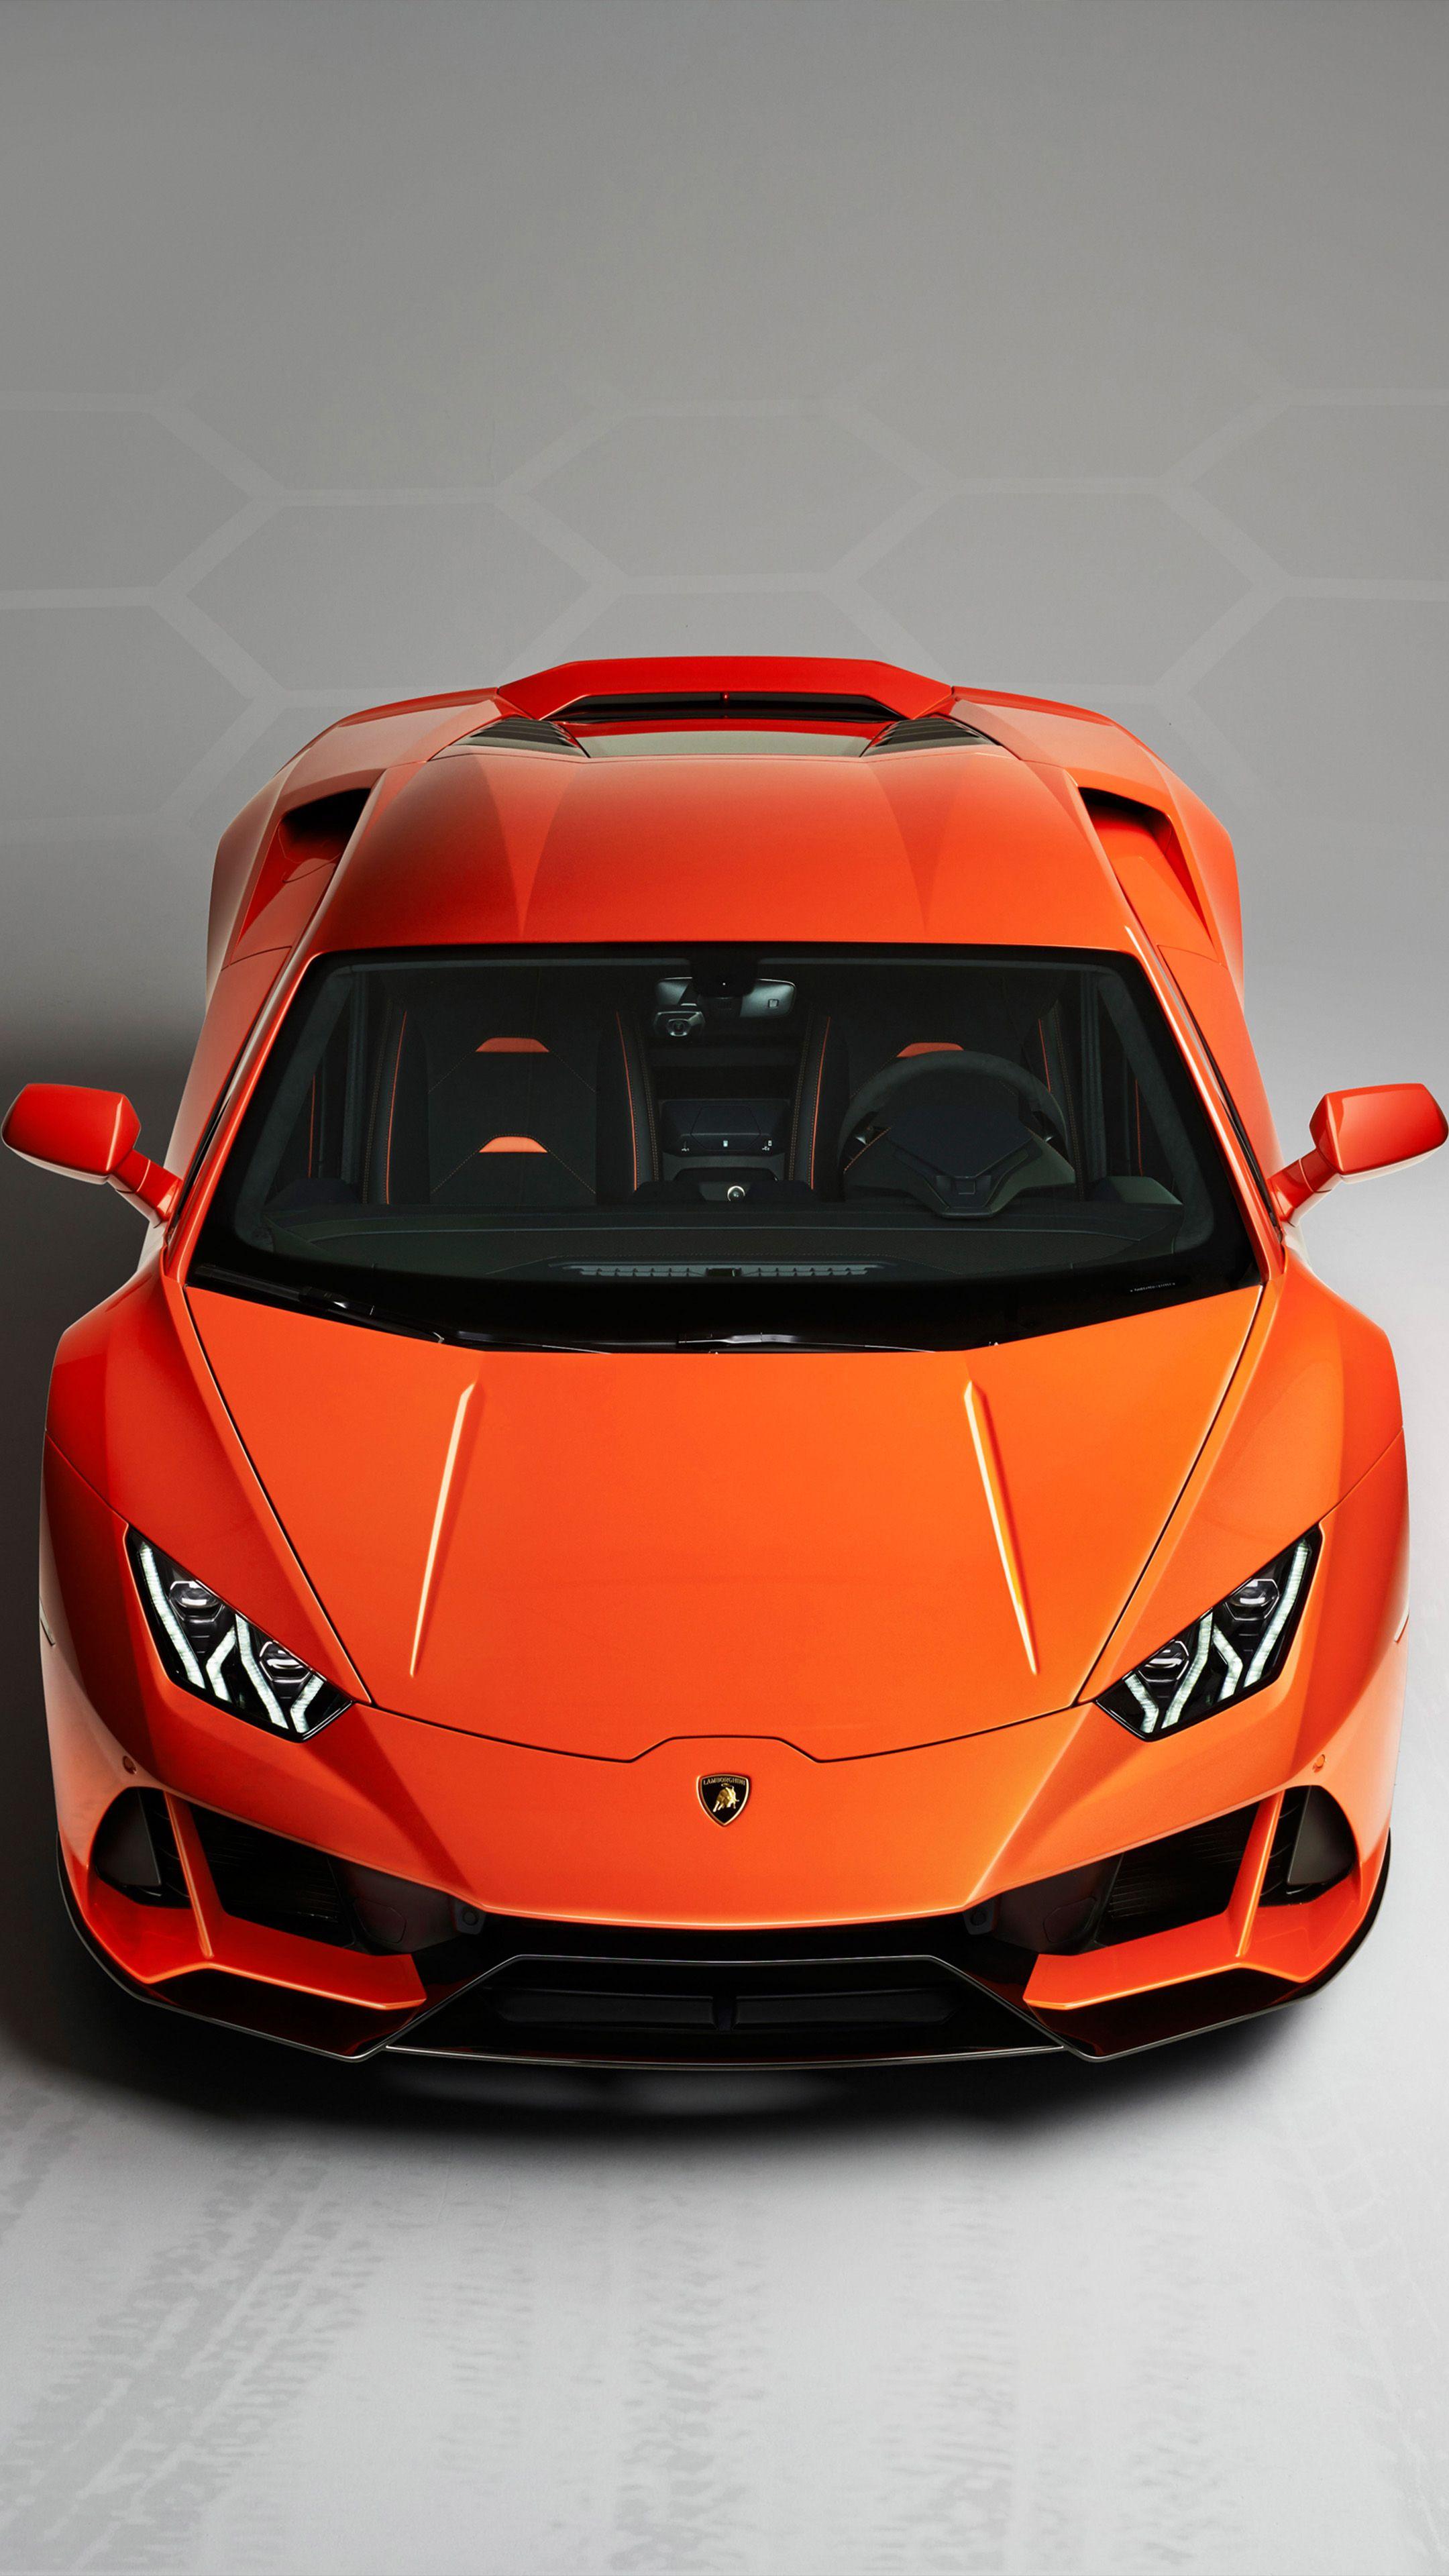 Lamborghini Huracan Evo 2019. Lamborghini huracan, Lamborghini